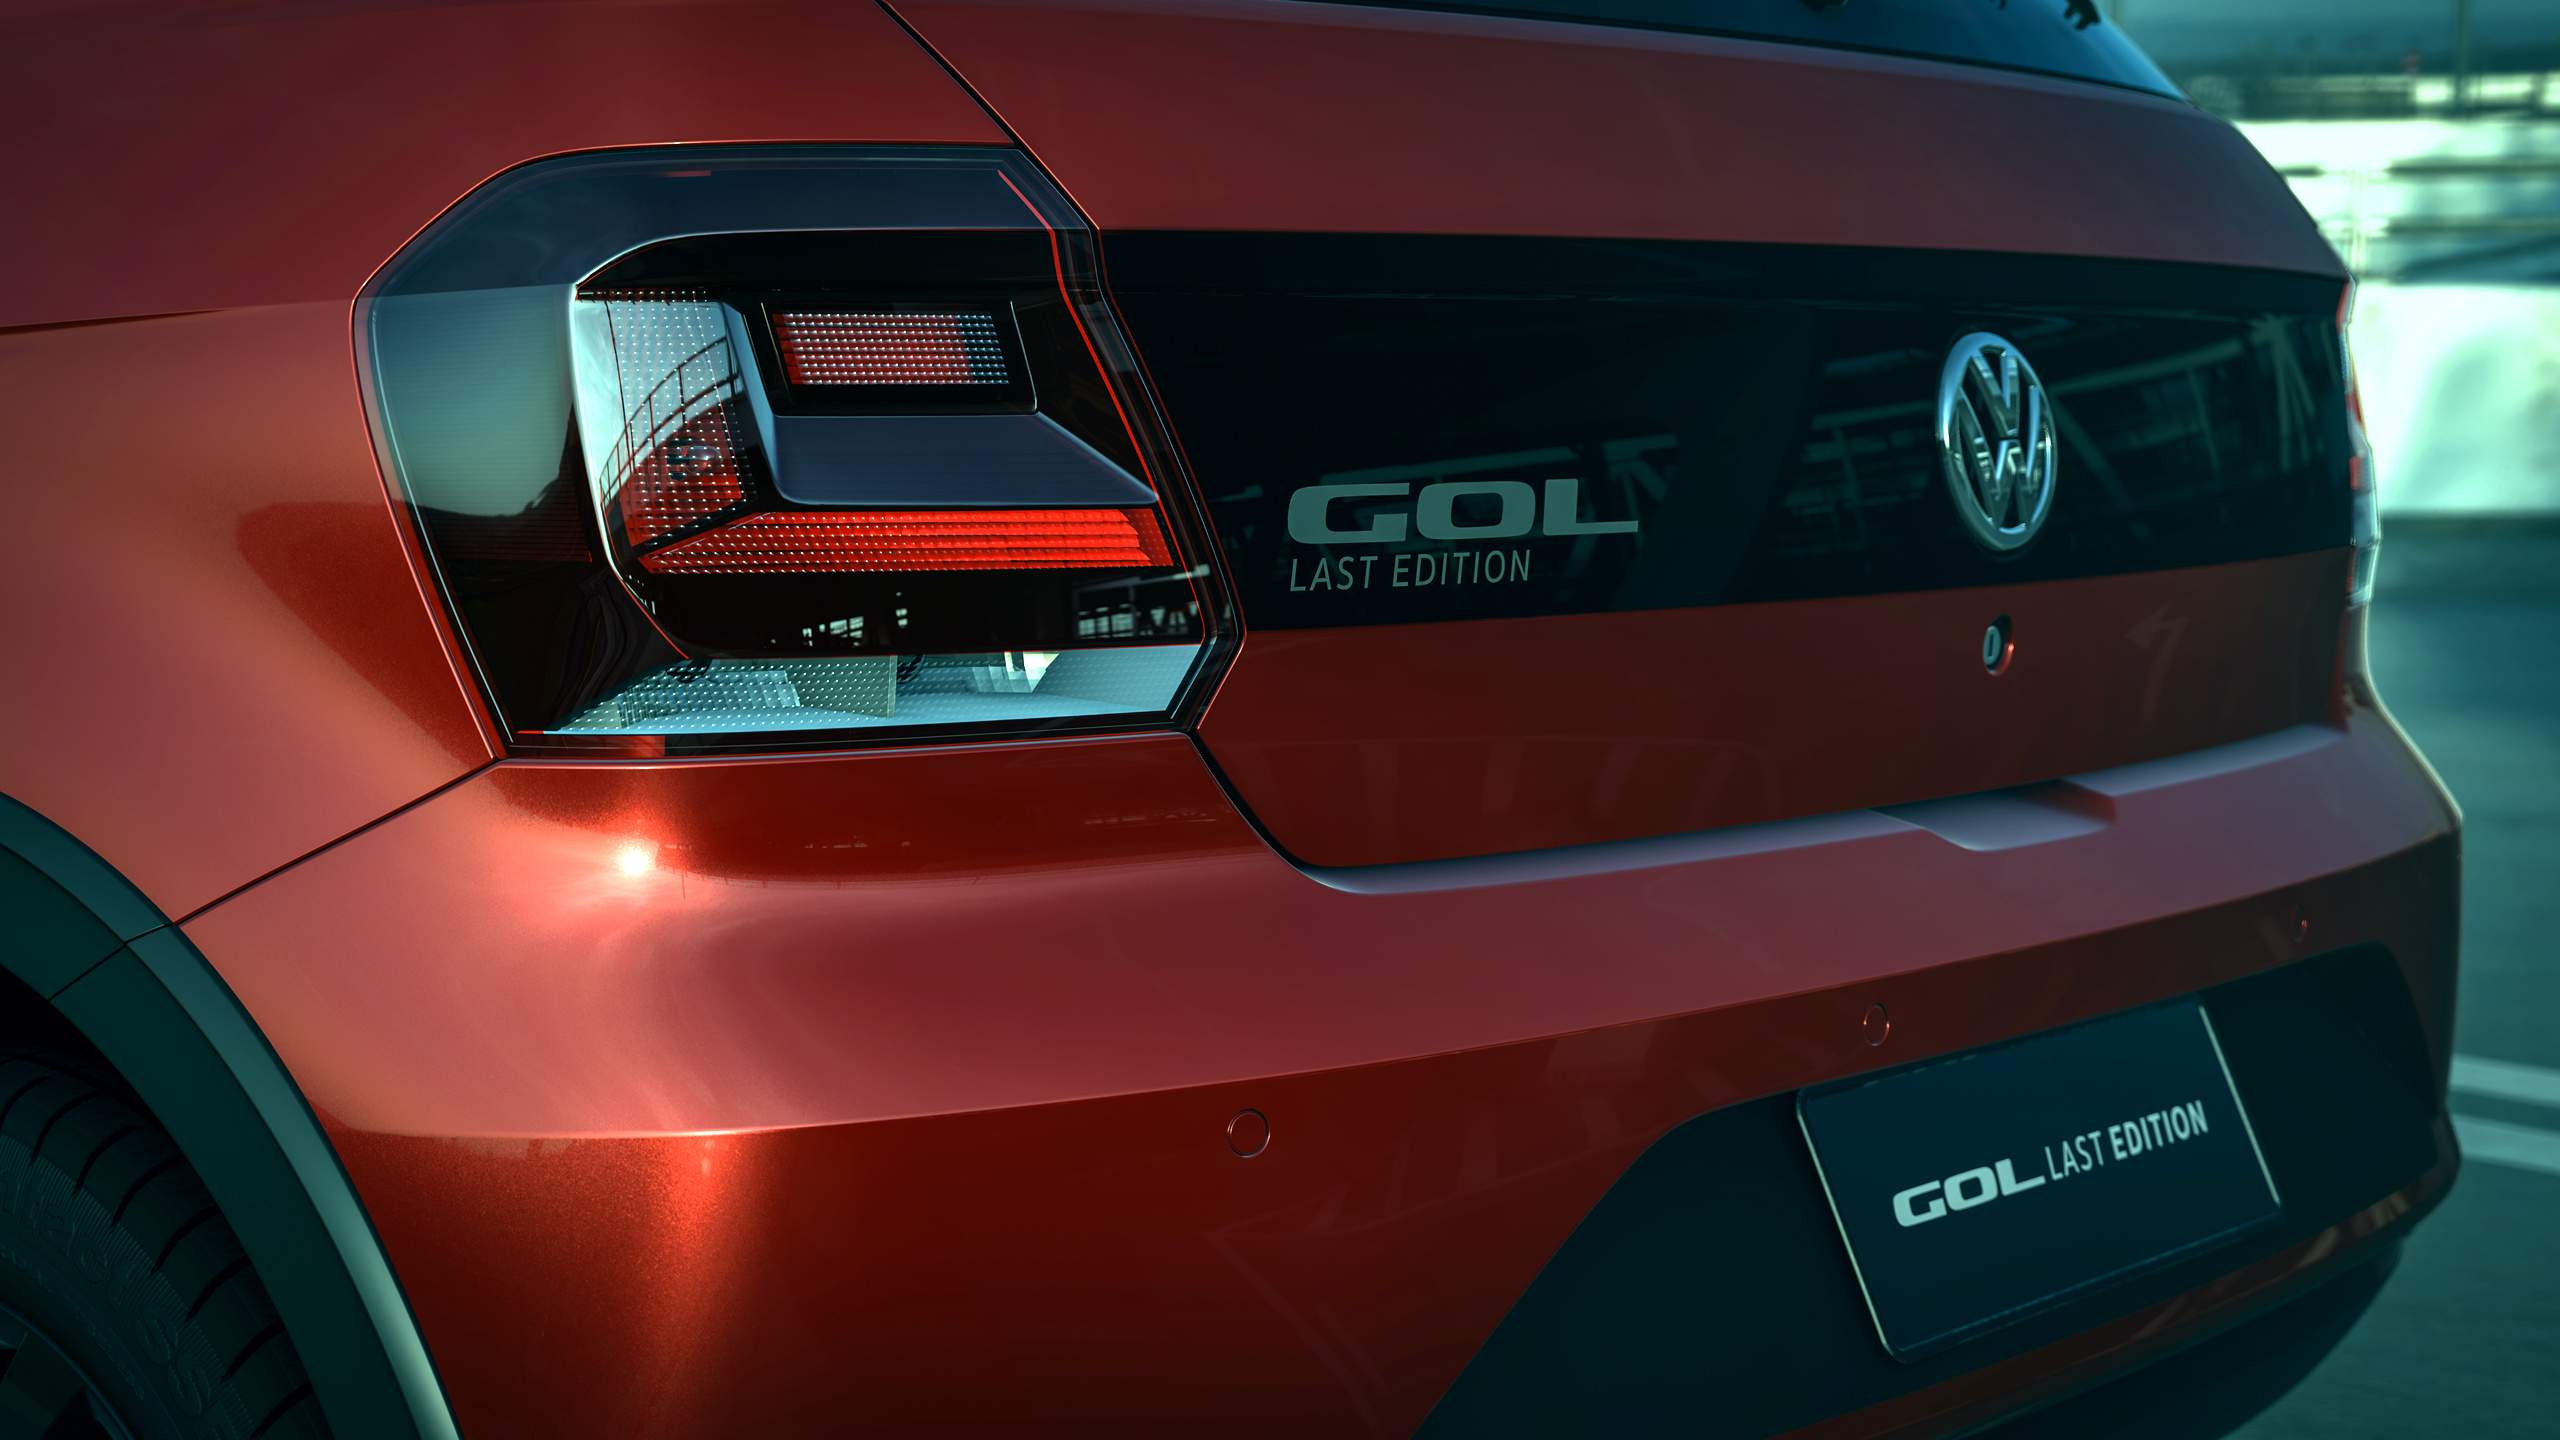 VW Gol Last Edition de exportação tem motor 1.6; Brasil fica com o